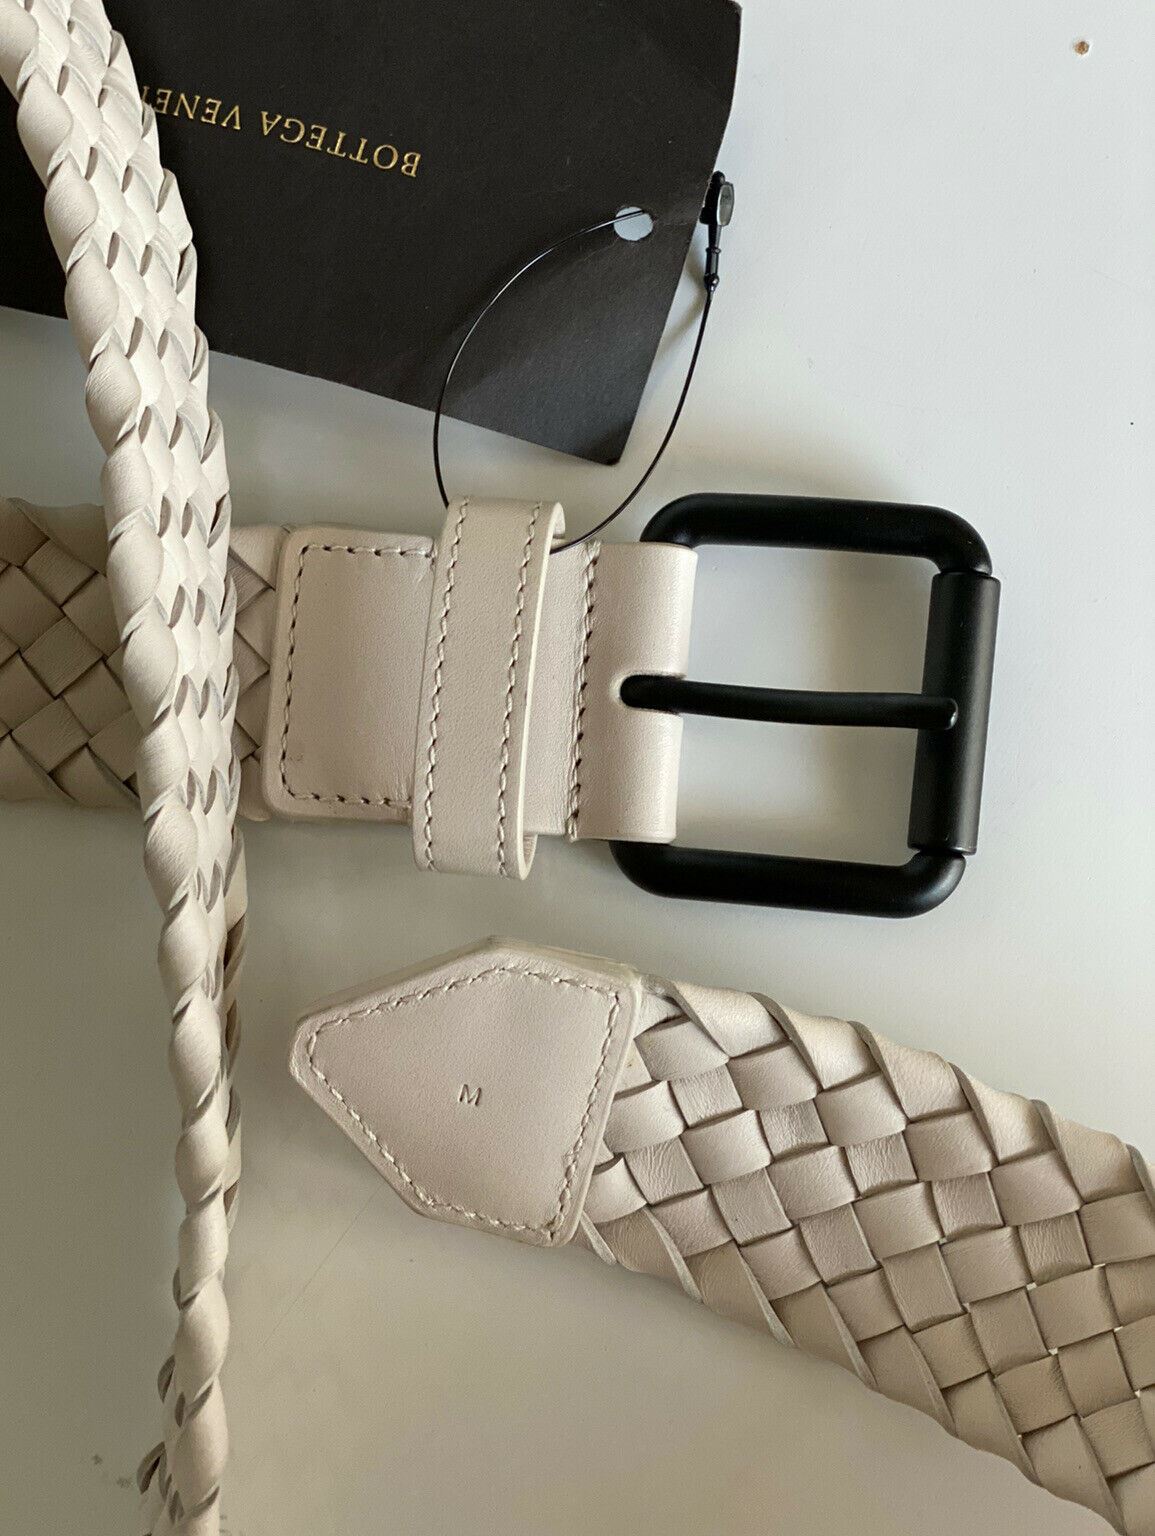 NWT $750 Bottega Veneta Intrecciato Mist Leather M (100 cm) Belt Italy 570980